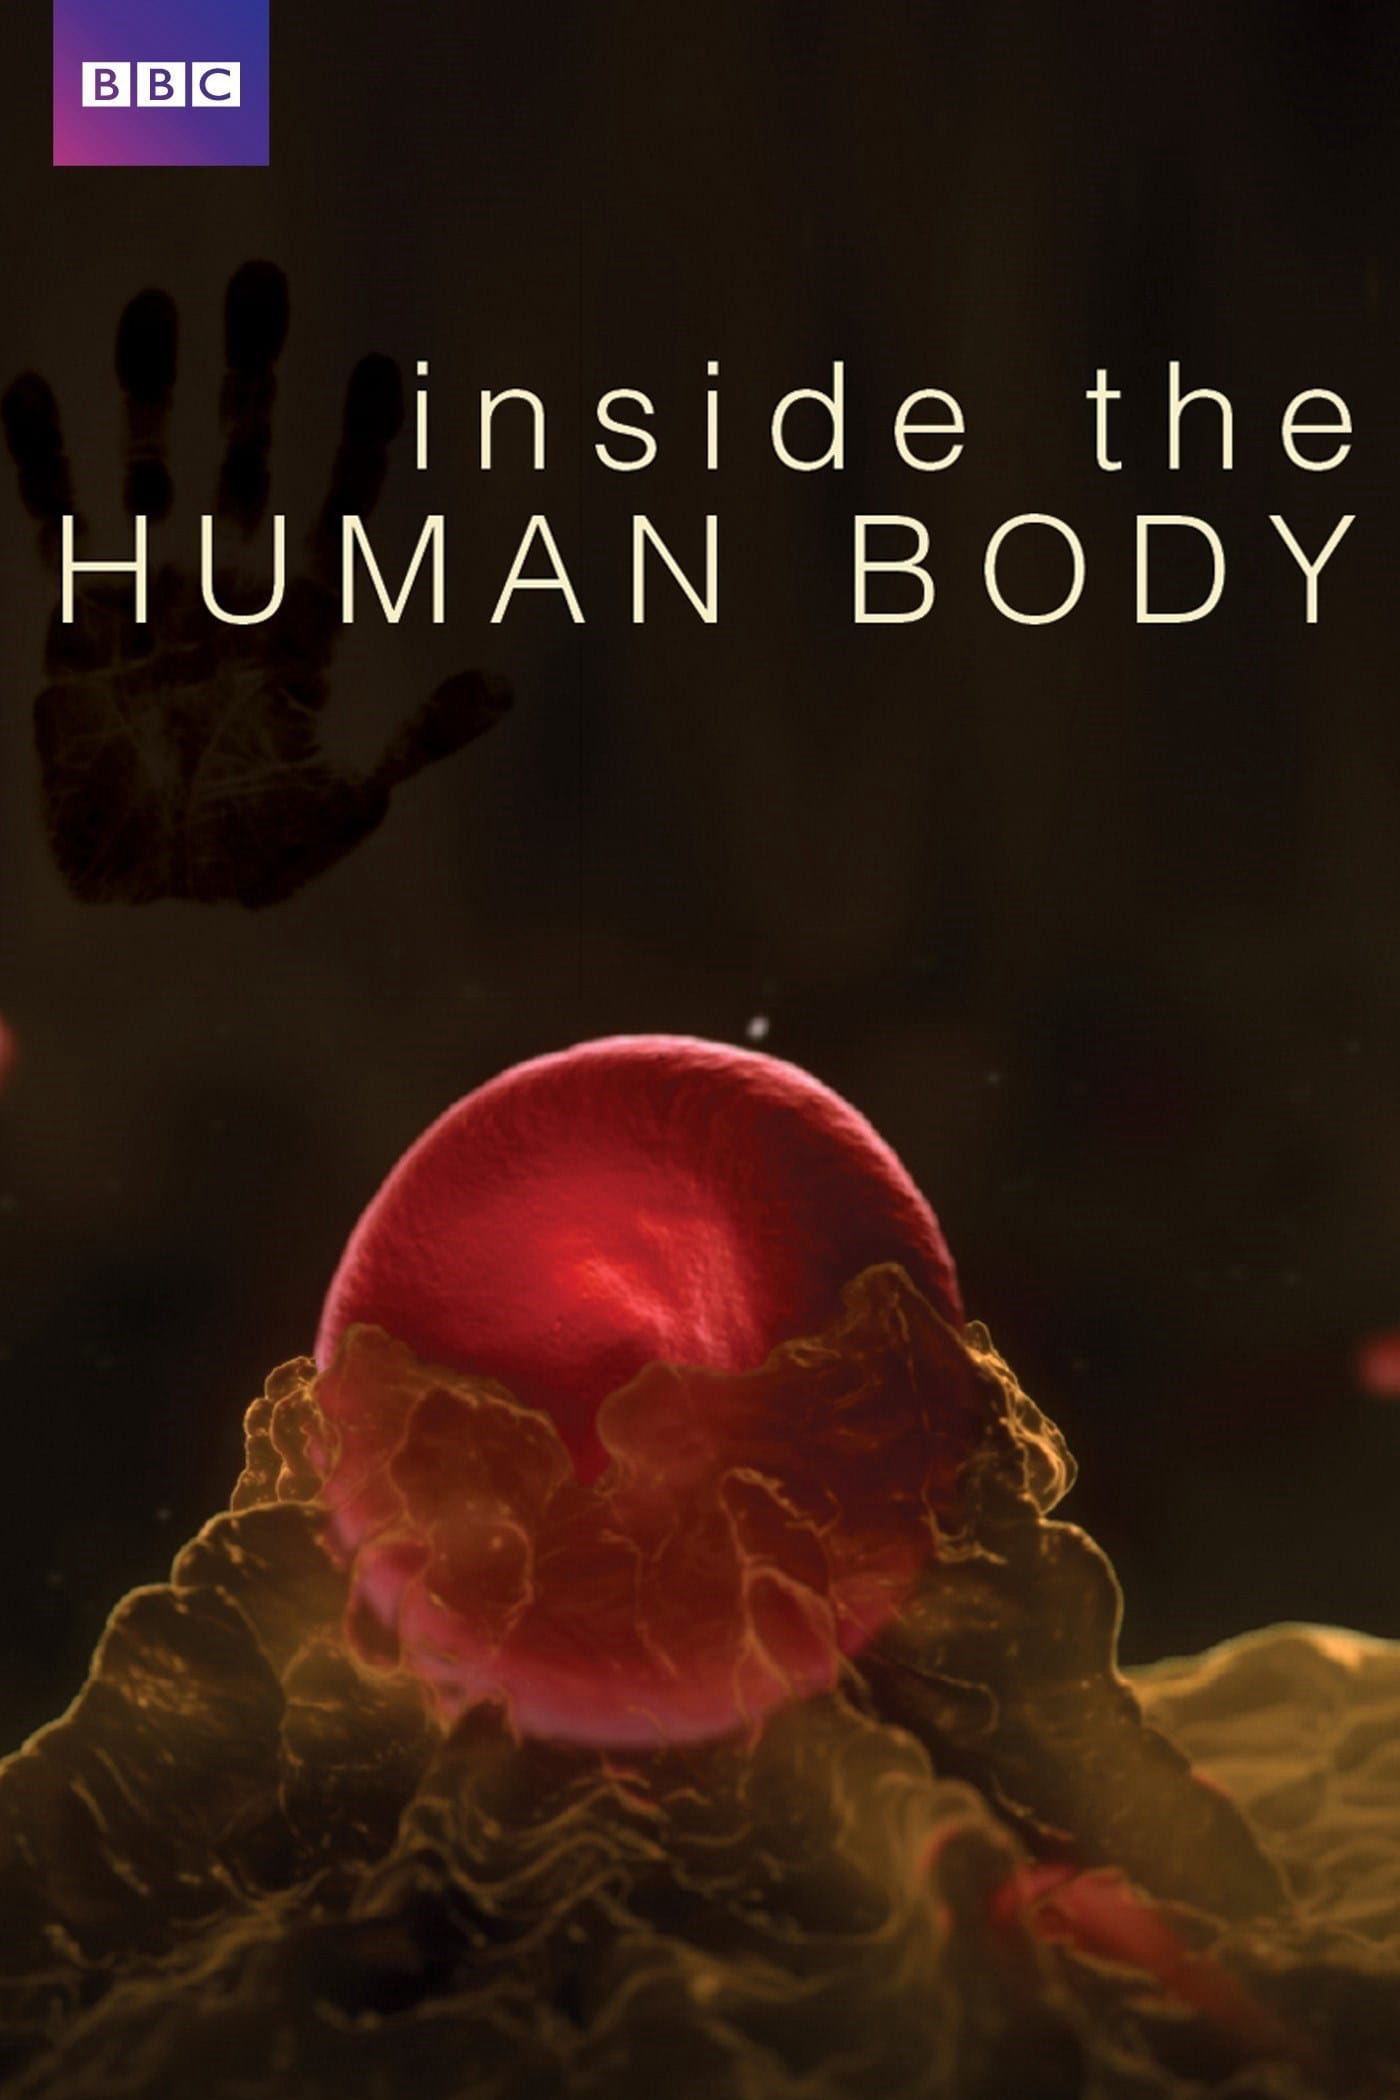 Inside the Human Body (Inside the Human Body) [2011]